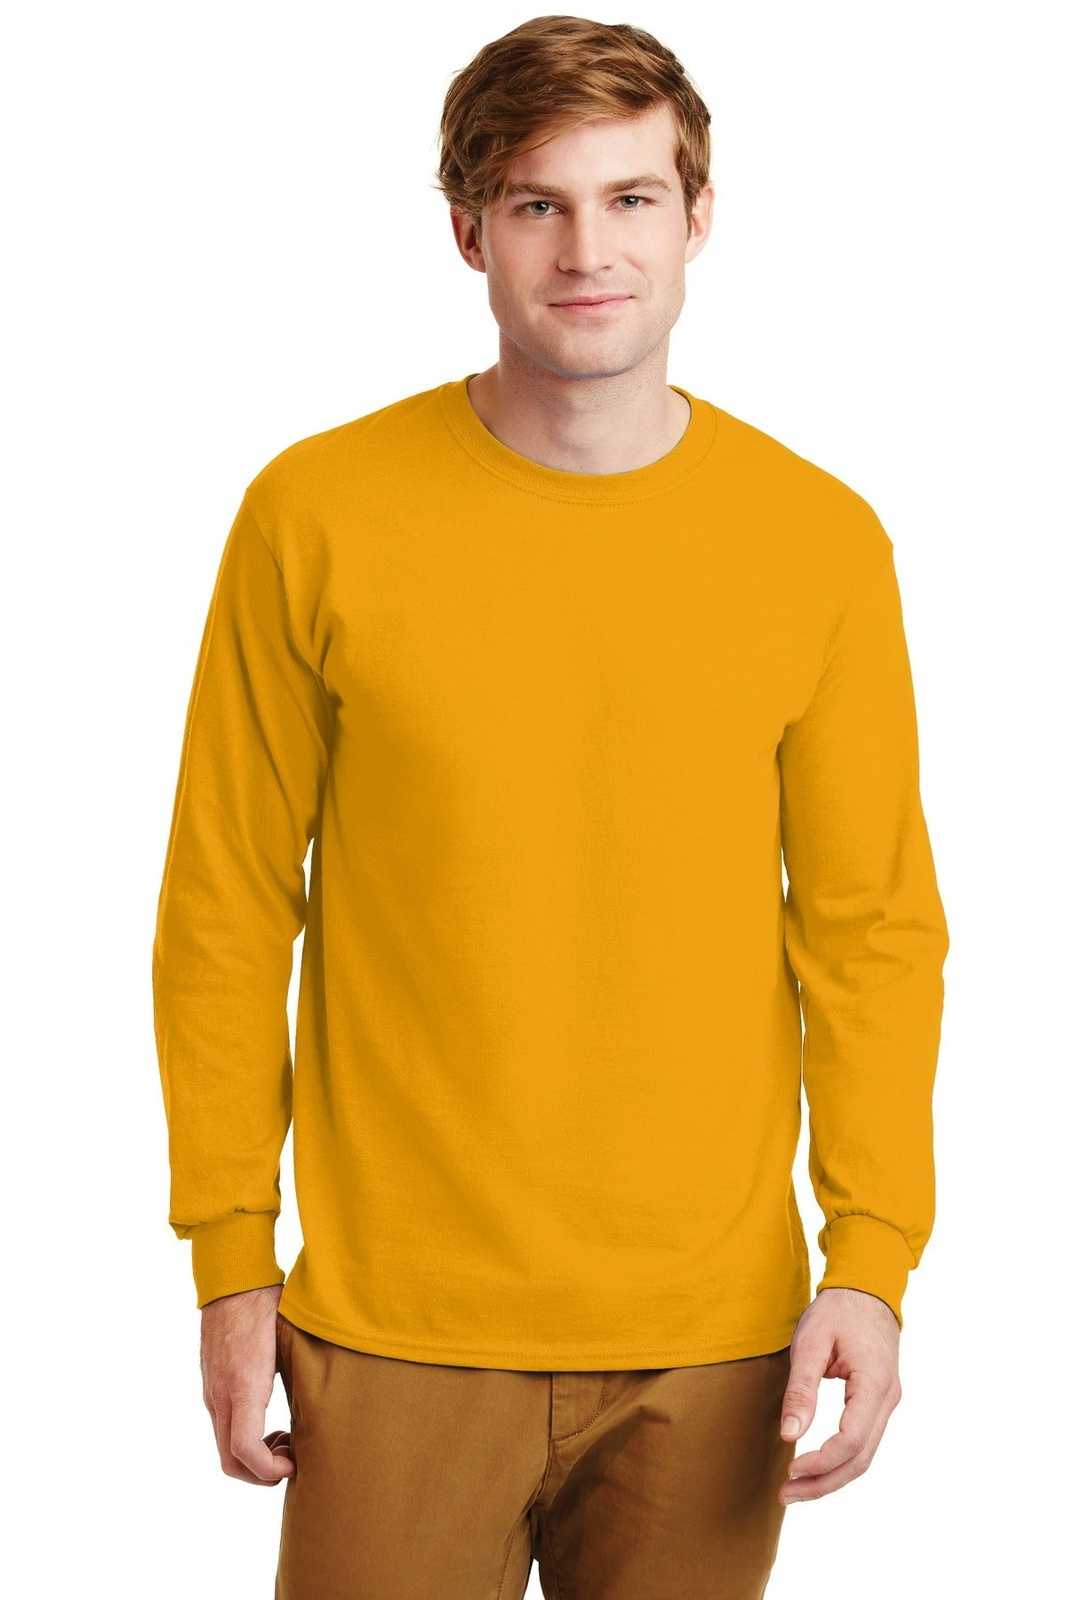 Gildan G2400 Ultra Cotton 100% Cotton Long Sleeve T-Shirt - Gold - HIT a Double